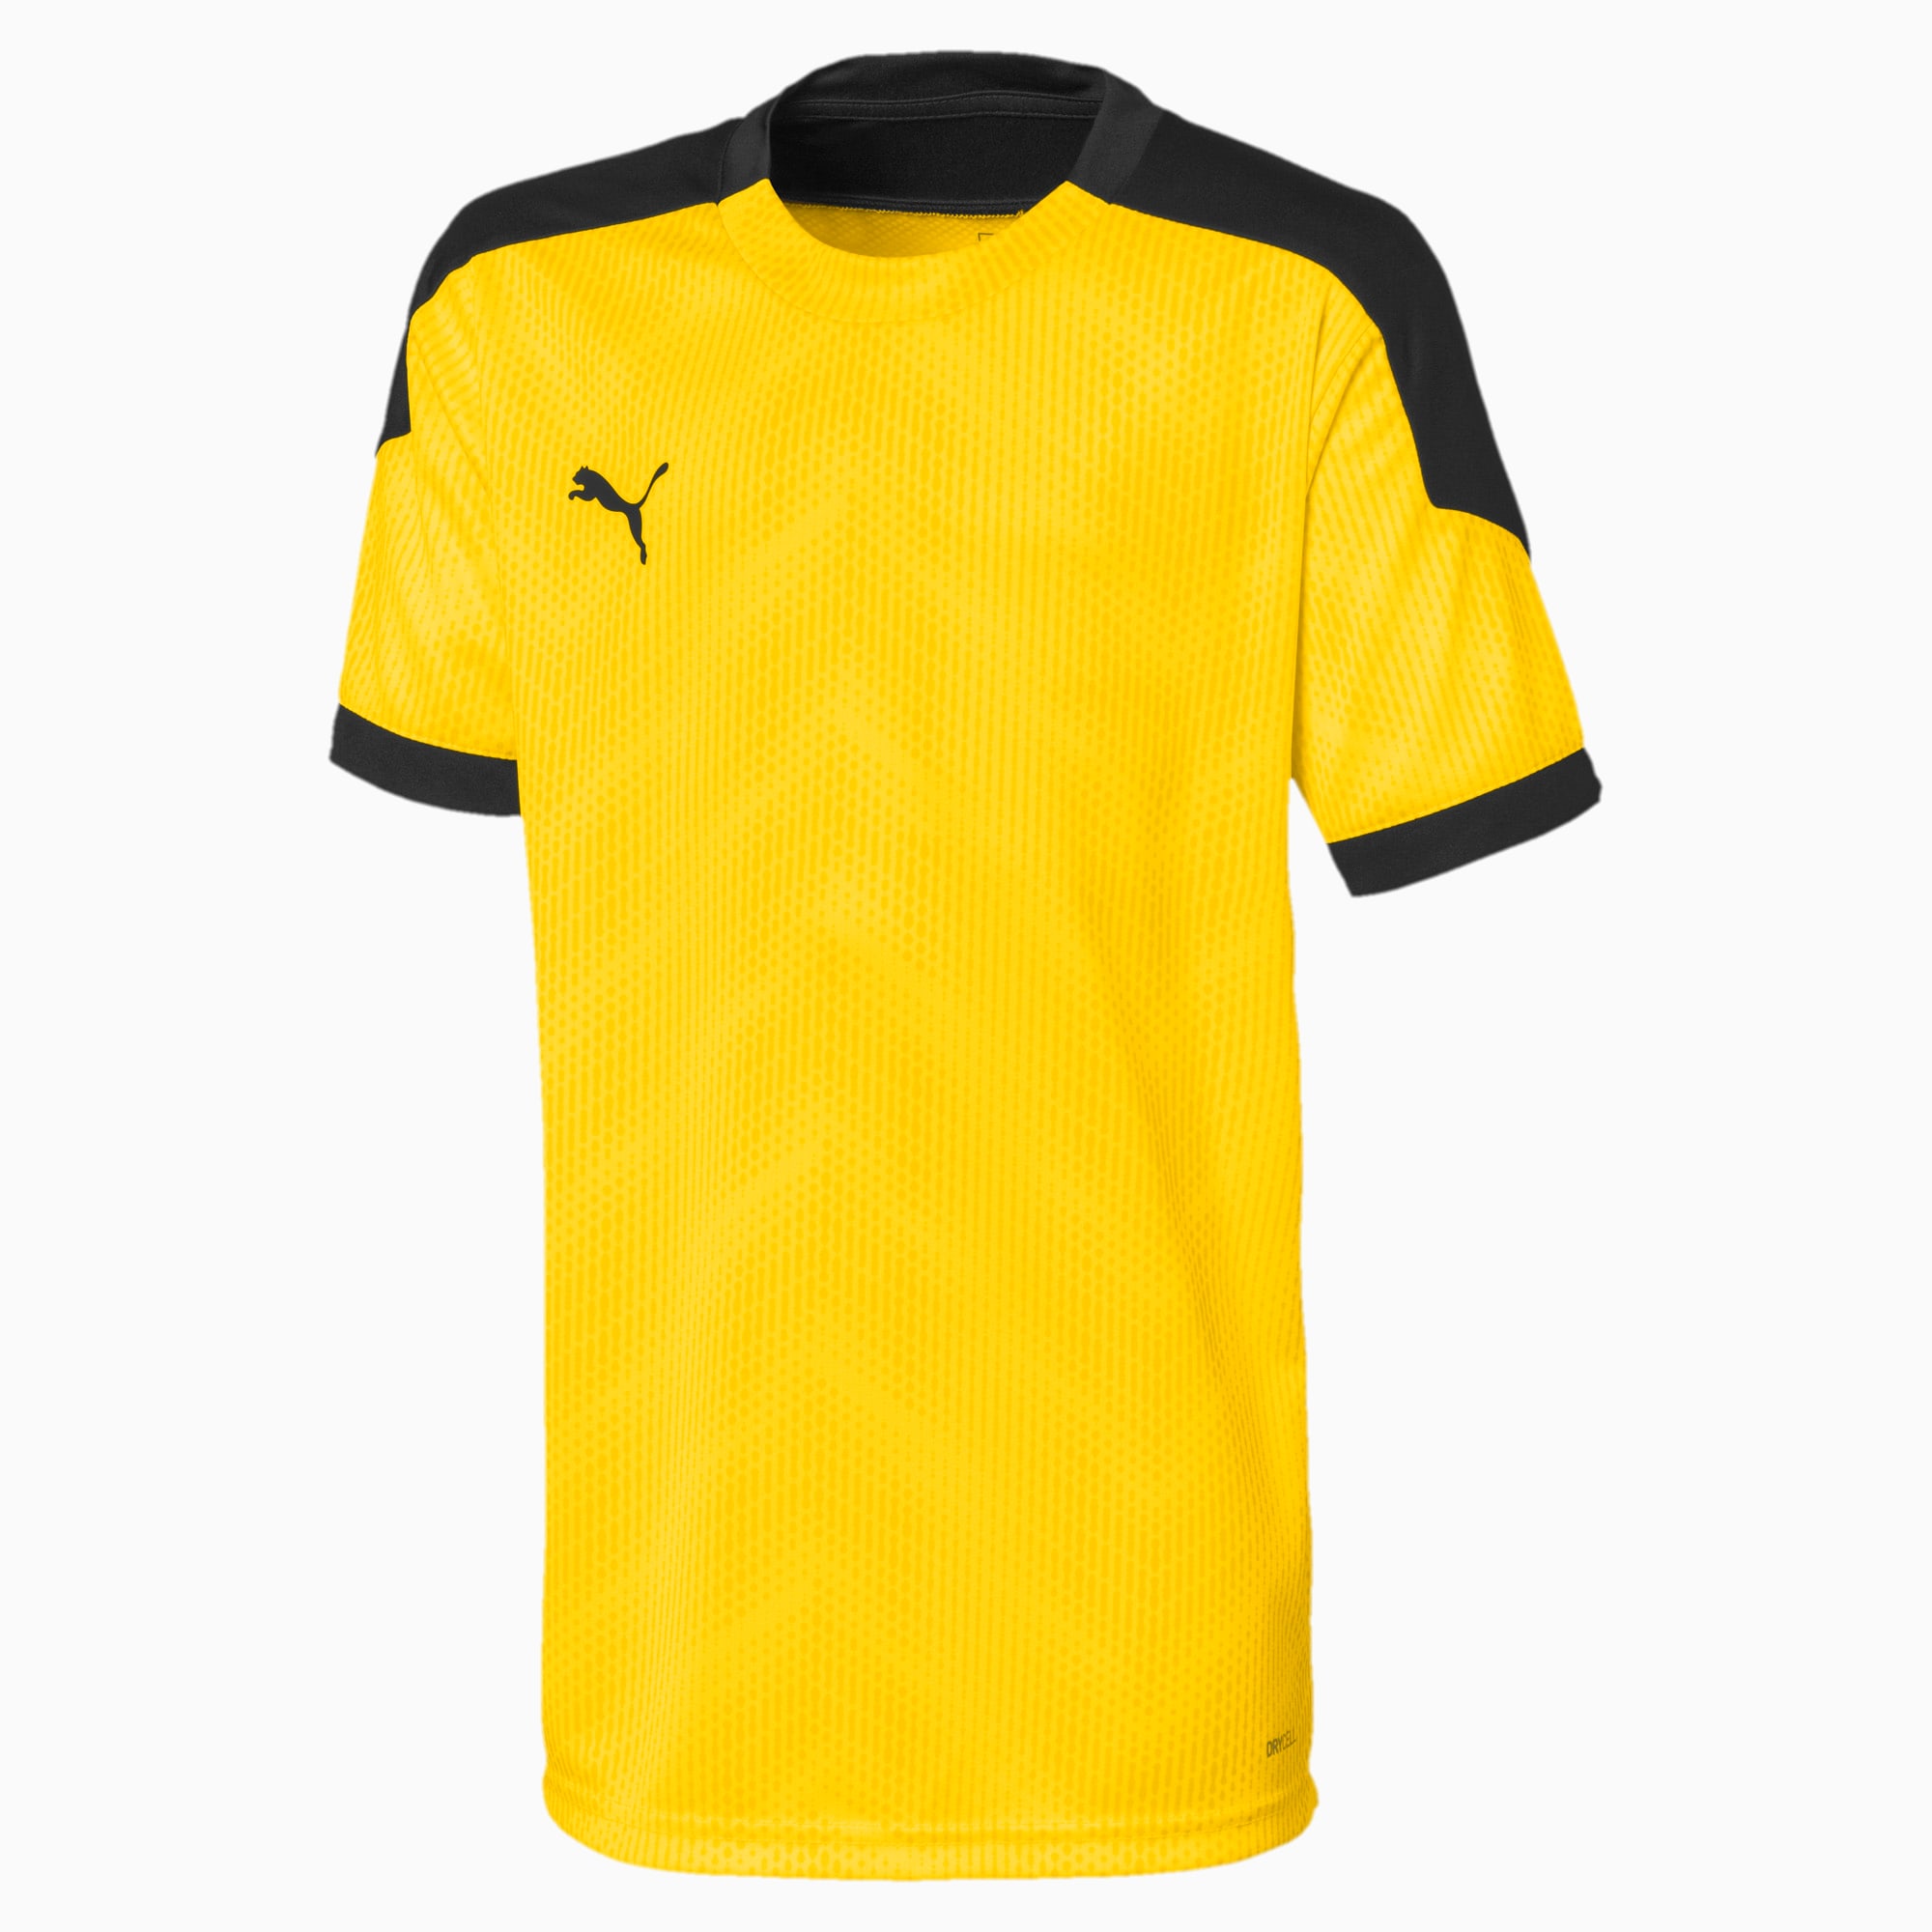 Image of PUMA ftblNXT Graphic Kinder Fußball T-Shirt | Mit Aucun | Gelb/Schwarz | Größe: 140